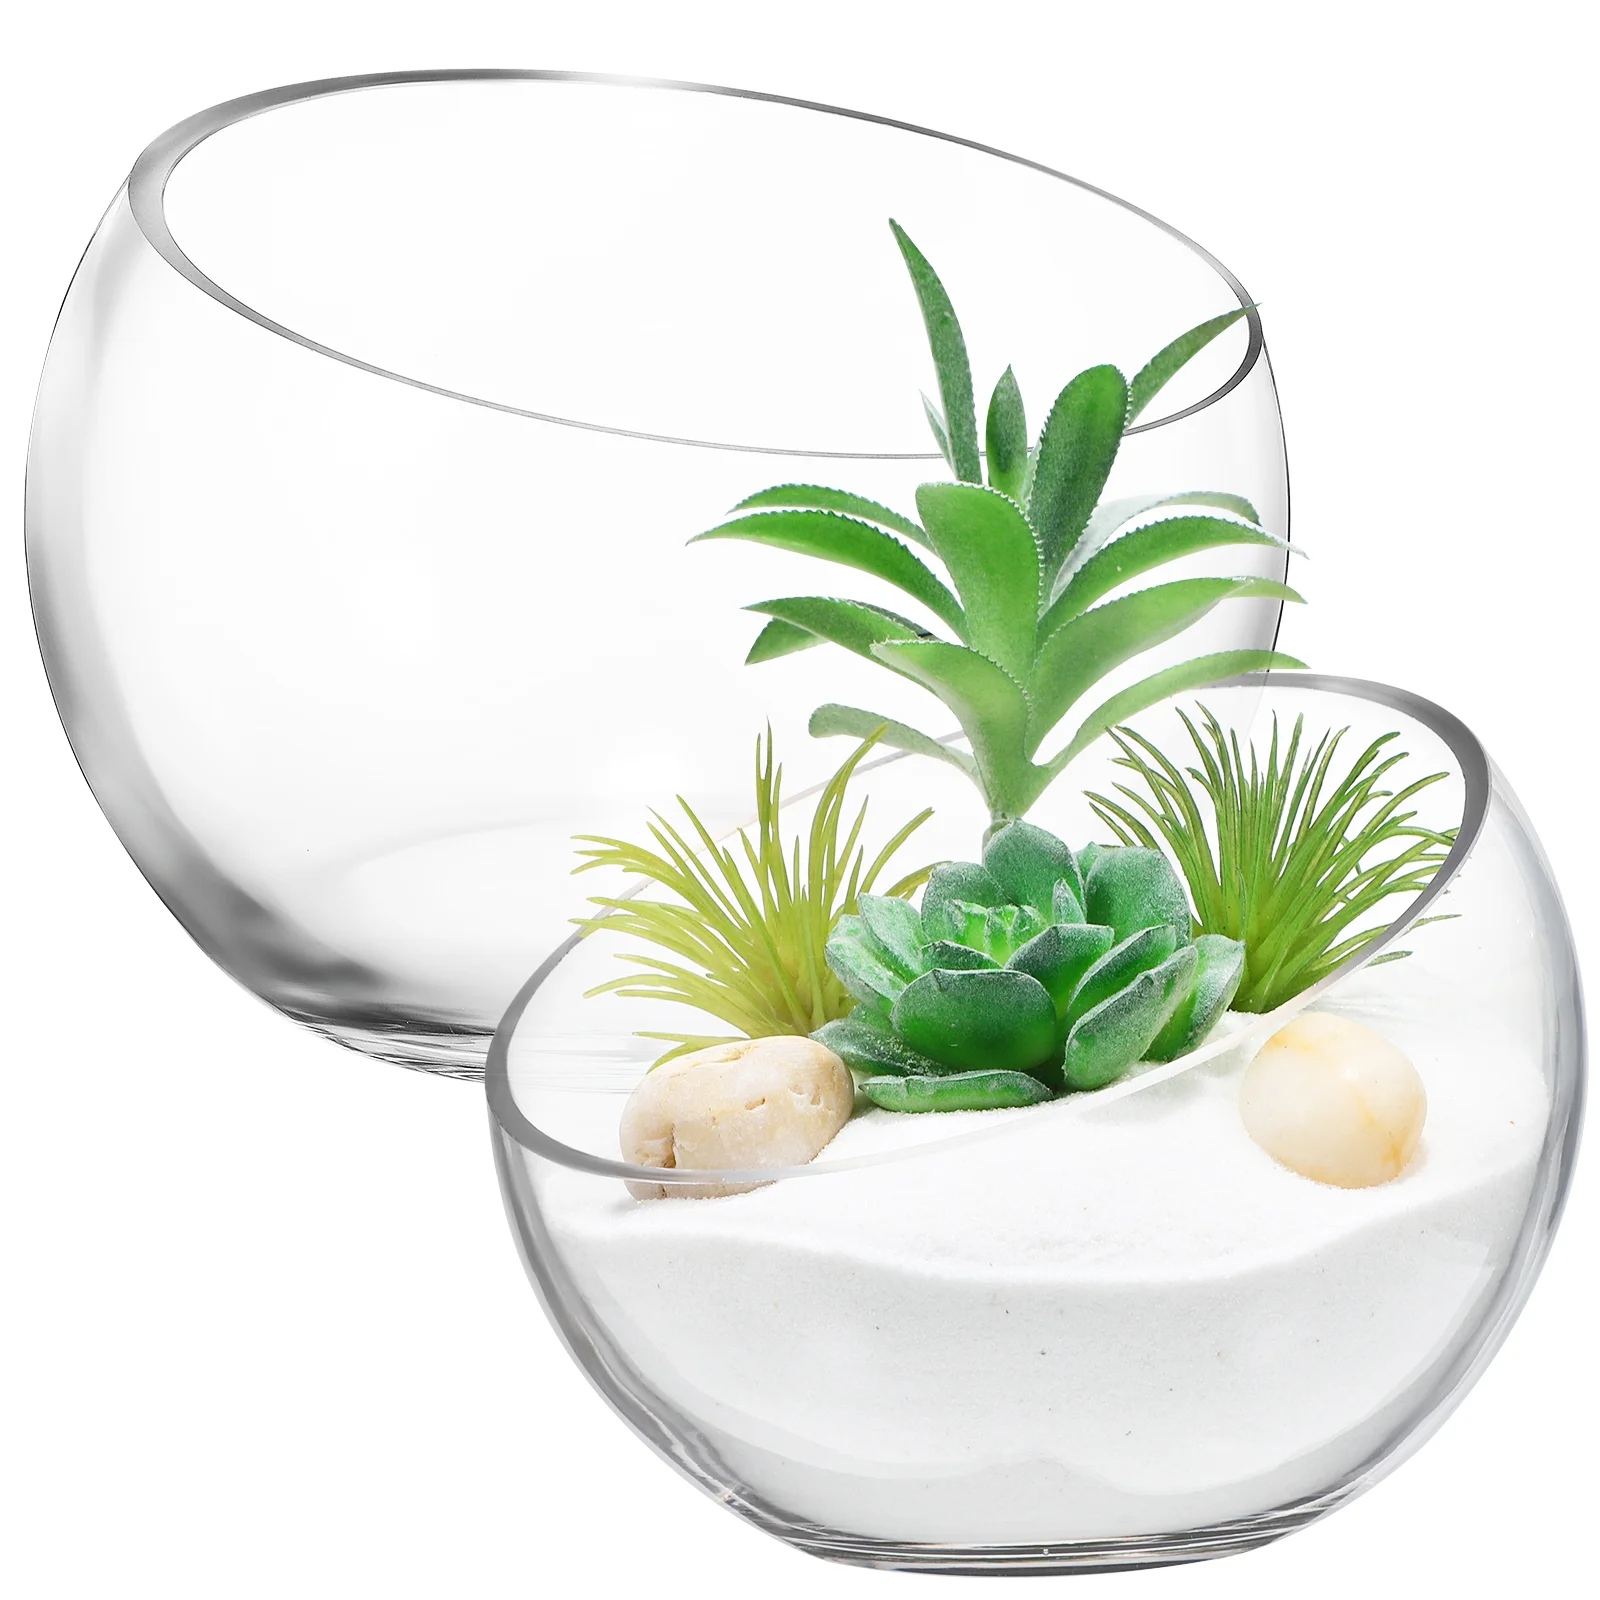 

2 Pcs Glass Planters Glass Fish Bowl Glass Flower Pots Succulent Planter Pot Round Flower Vase